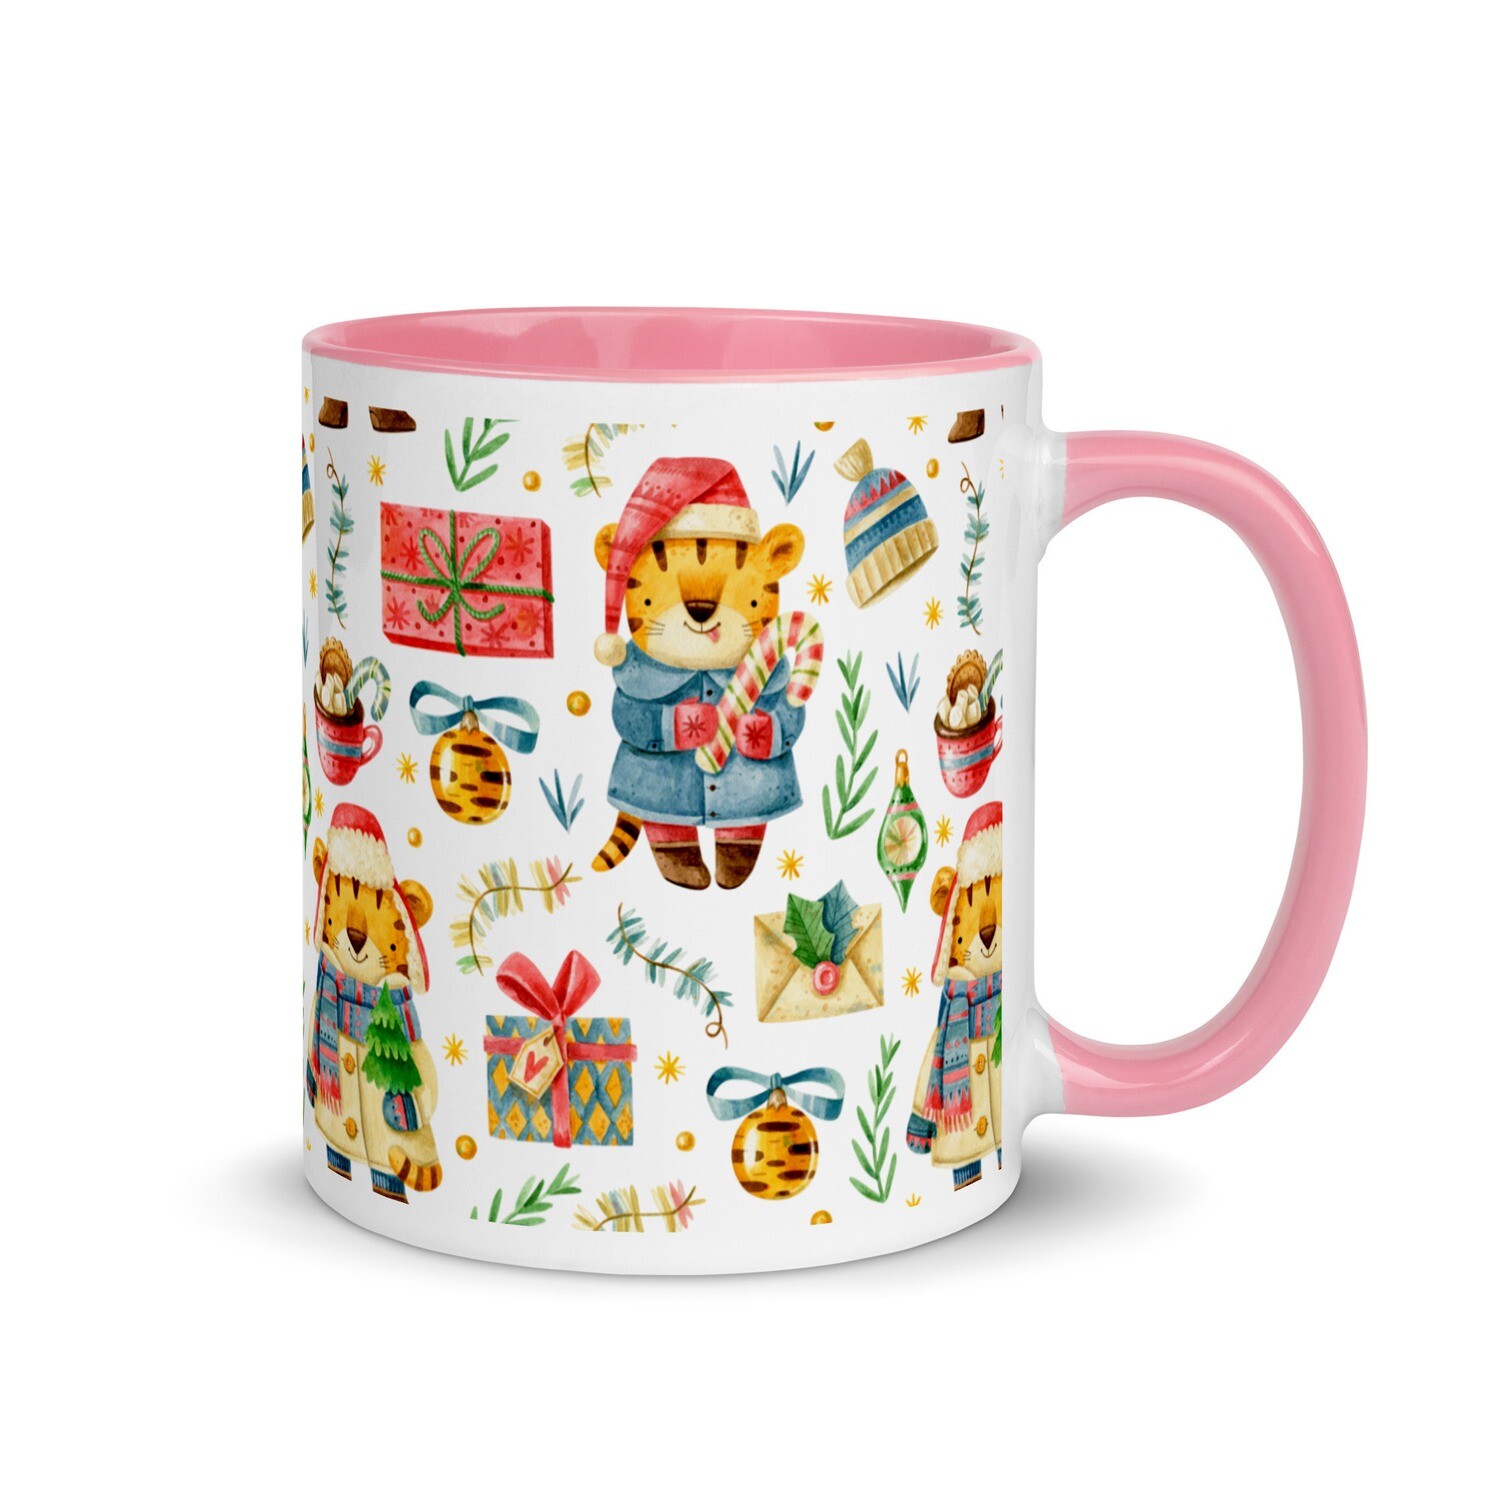 Festive mug - Design No. 6